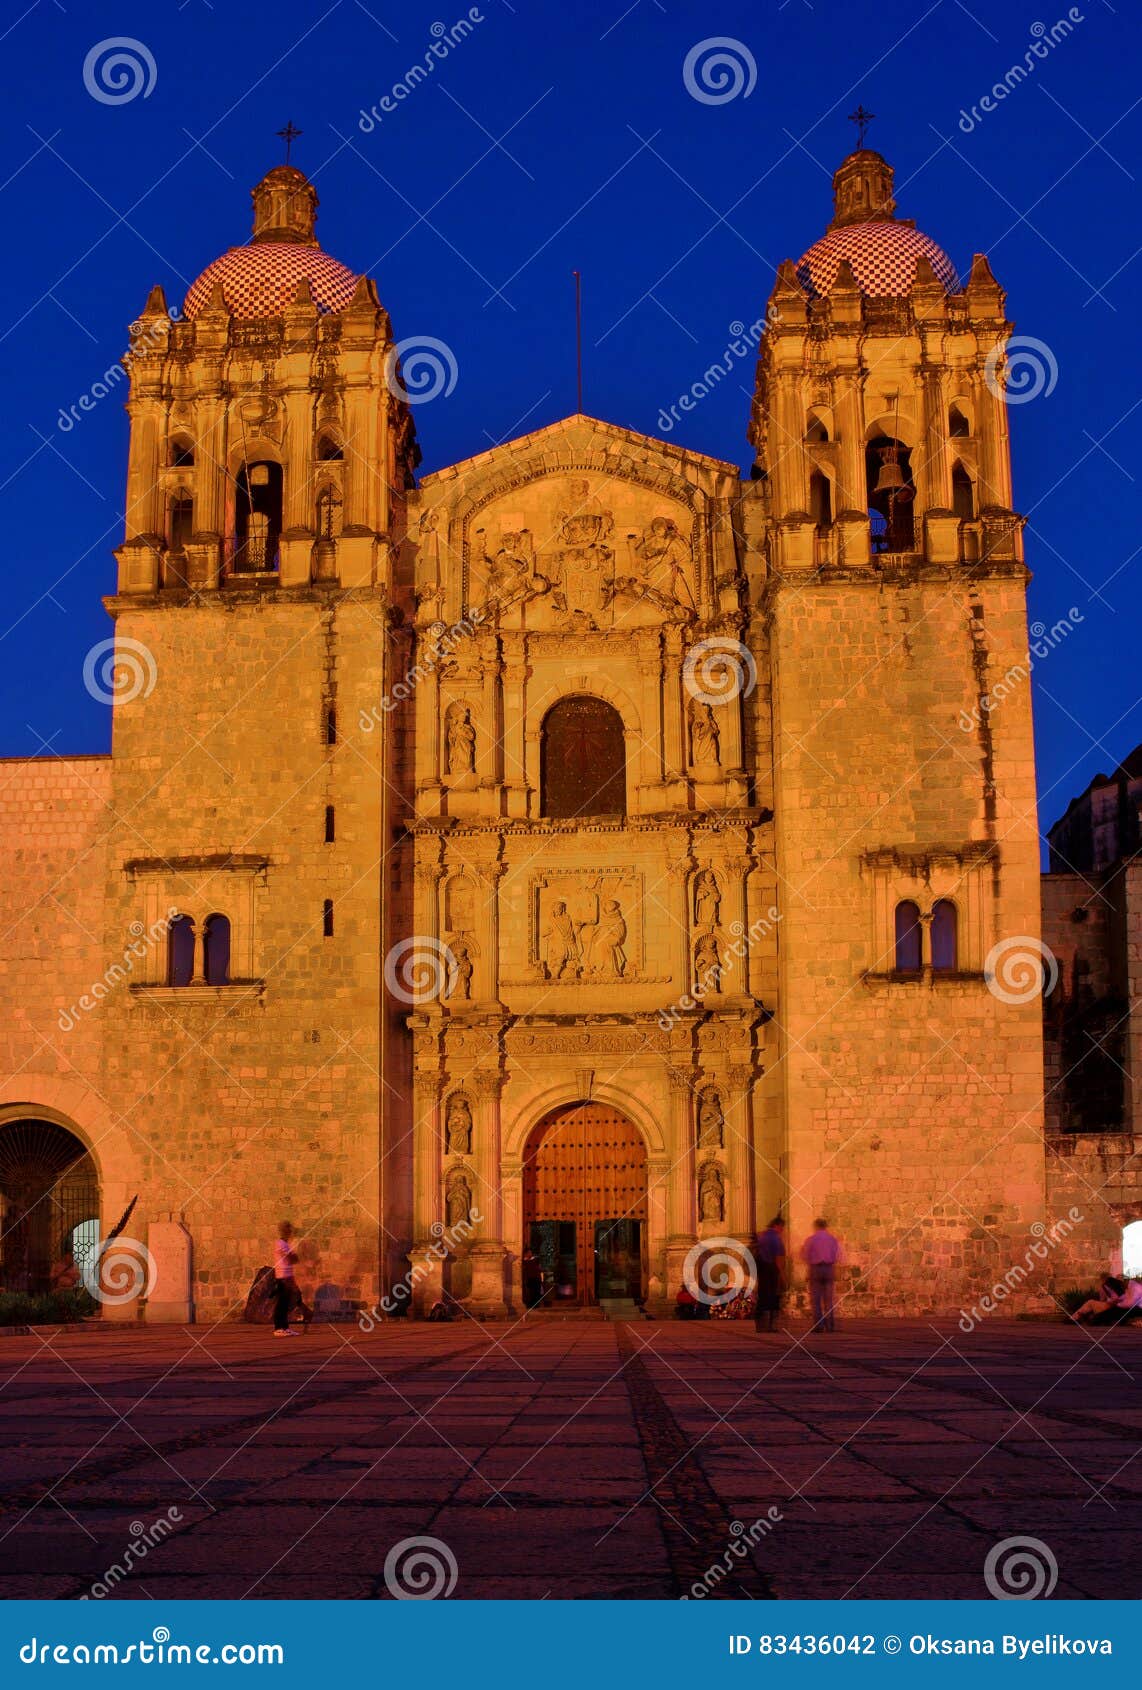 church of santo domingo de guzman. oaxaca, mexico